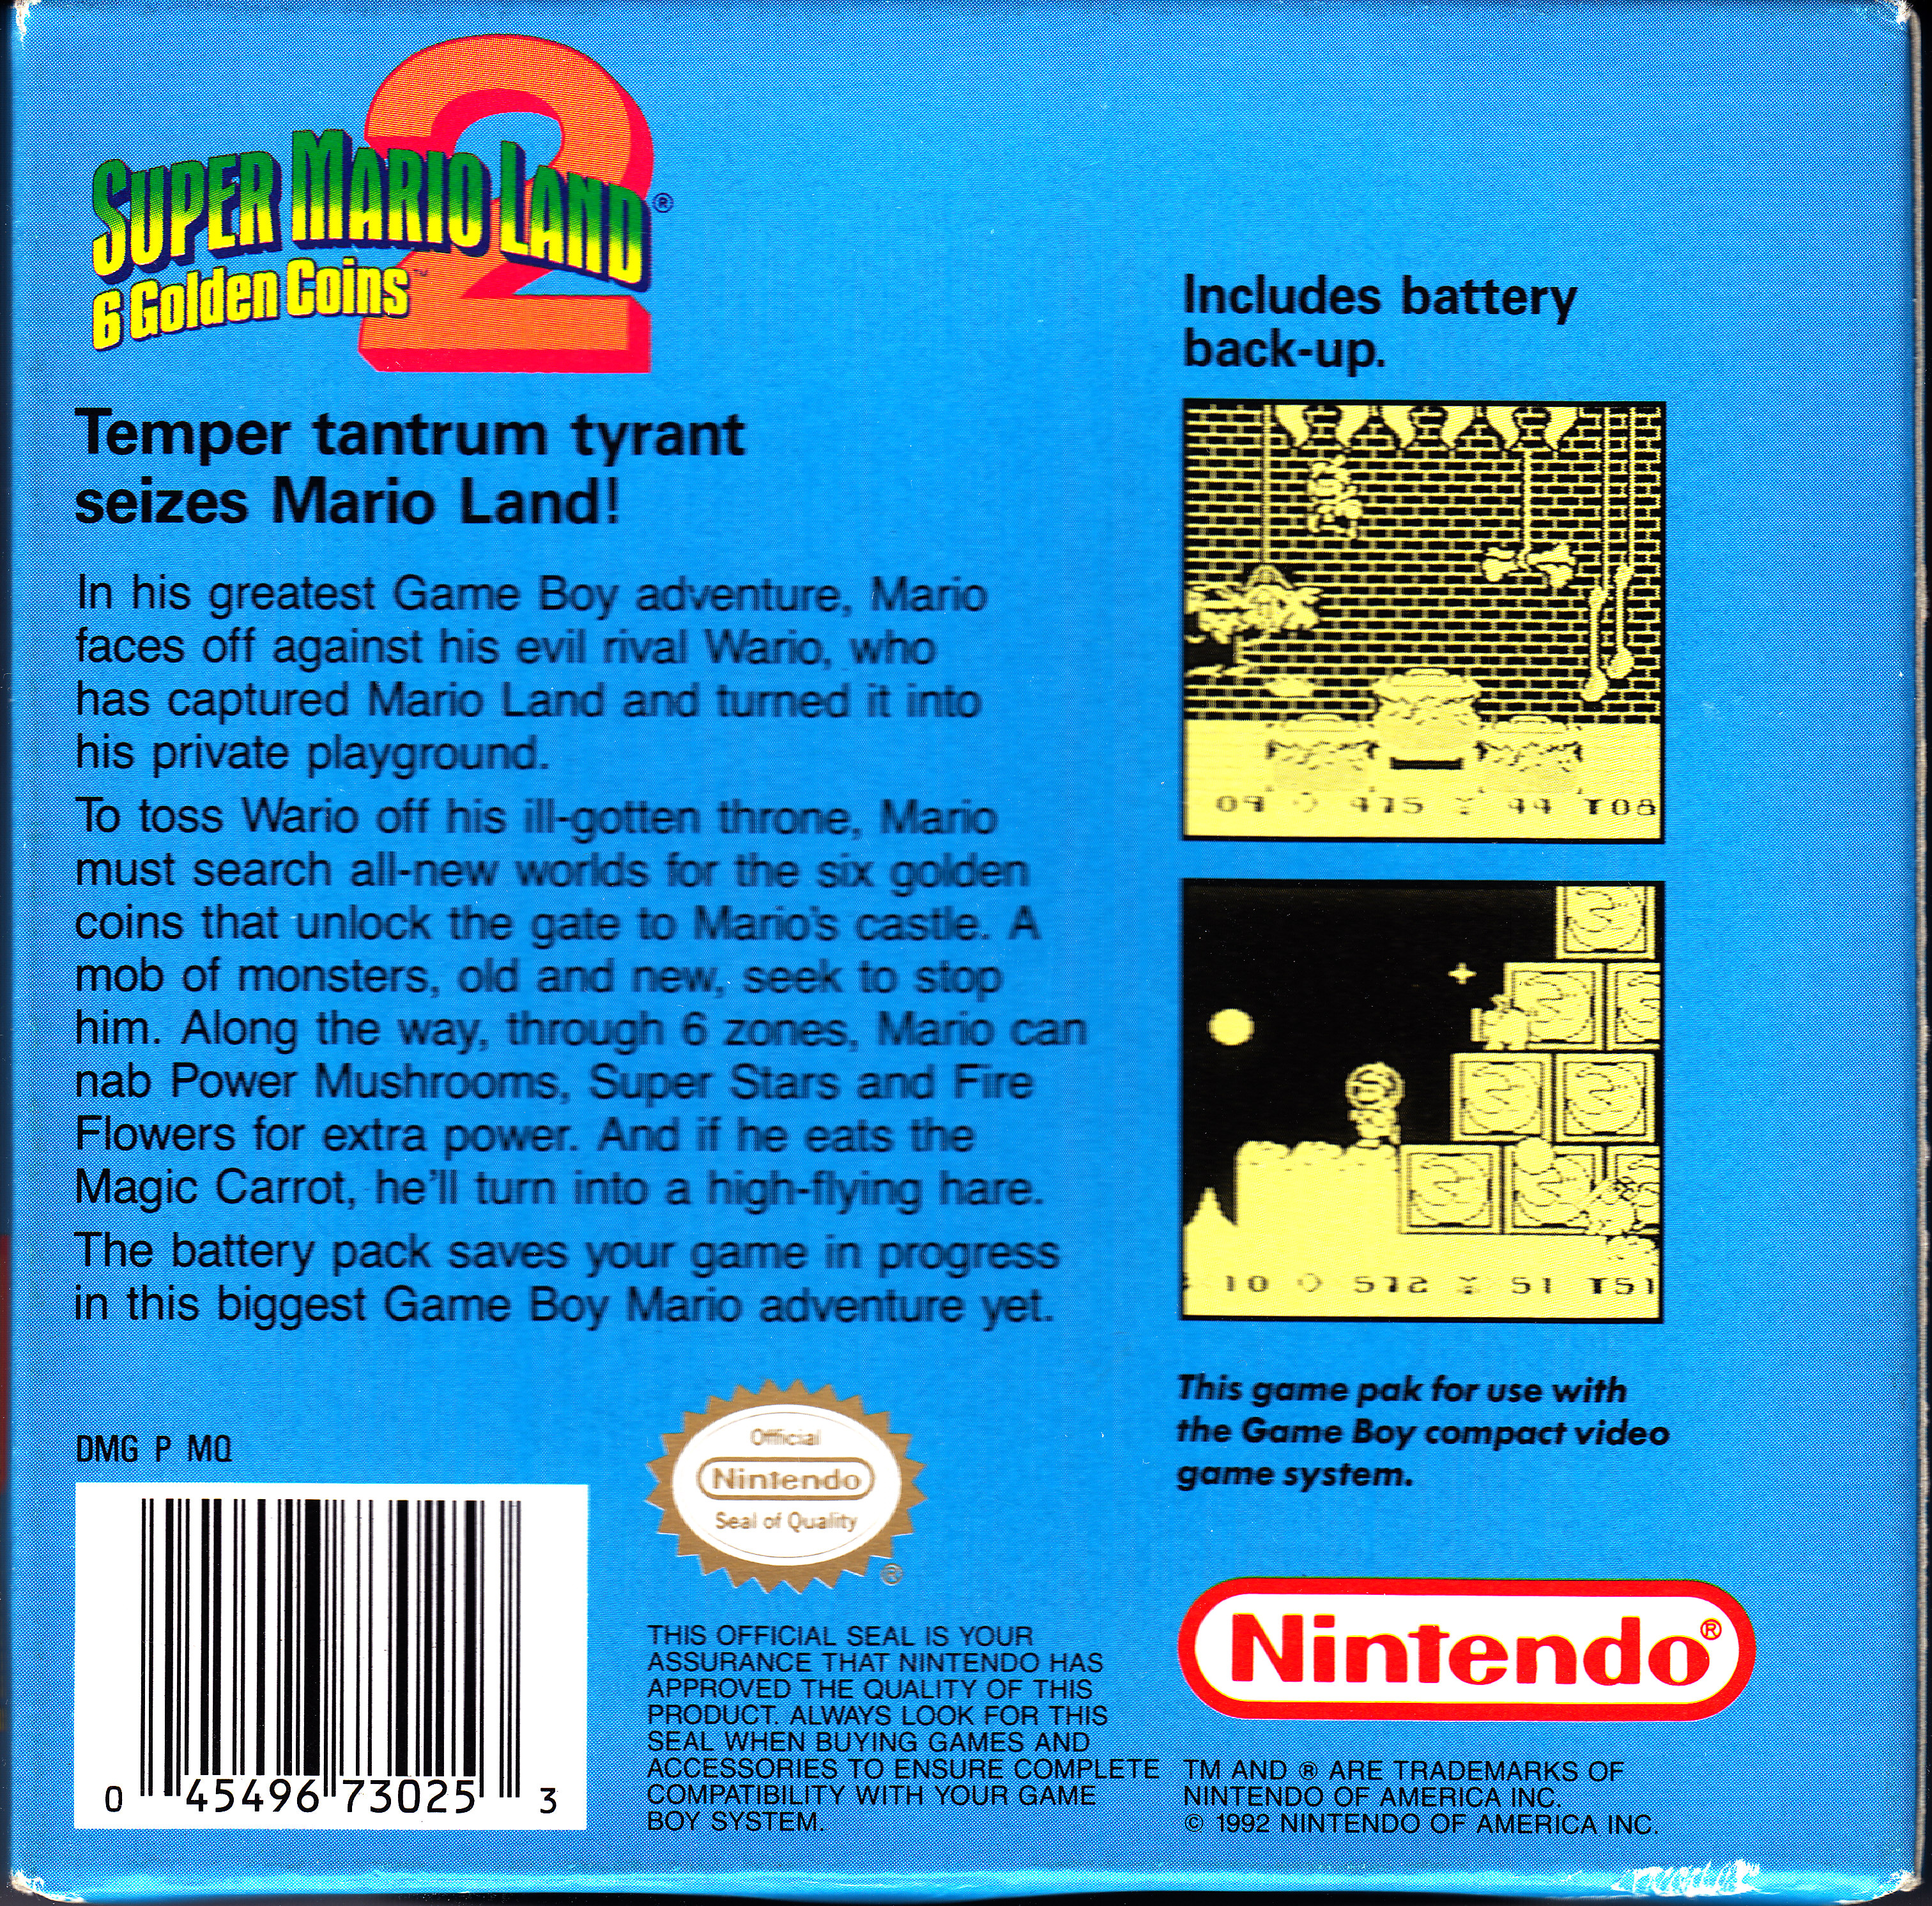 Super mario land 2 coins 6. Super Mario Land 2 6 Golden Coins. Super Mario Land 2 6 Golden Coins 1992. Super Mario Land 2 game boy. Super Mario Land game boy.